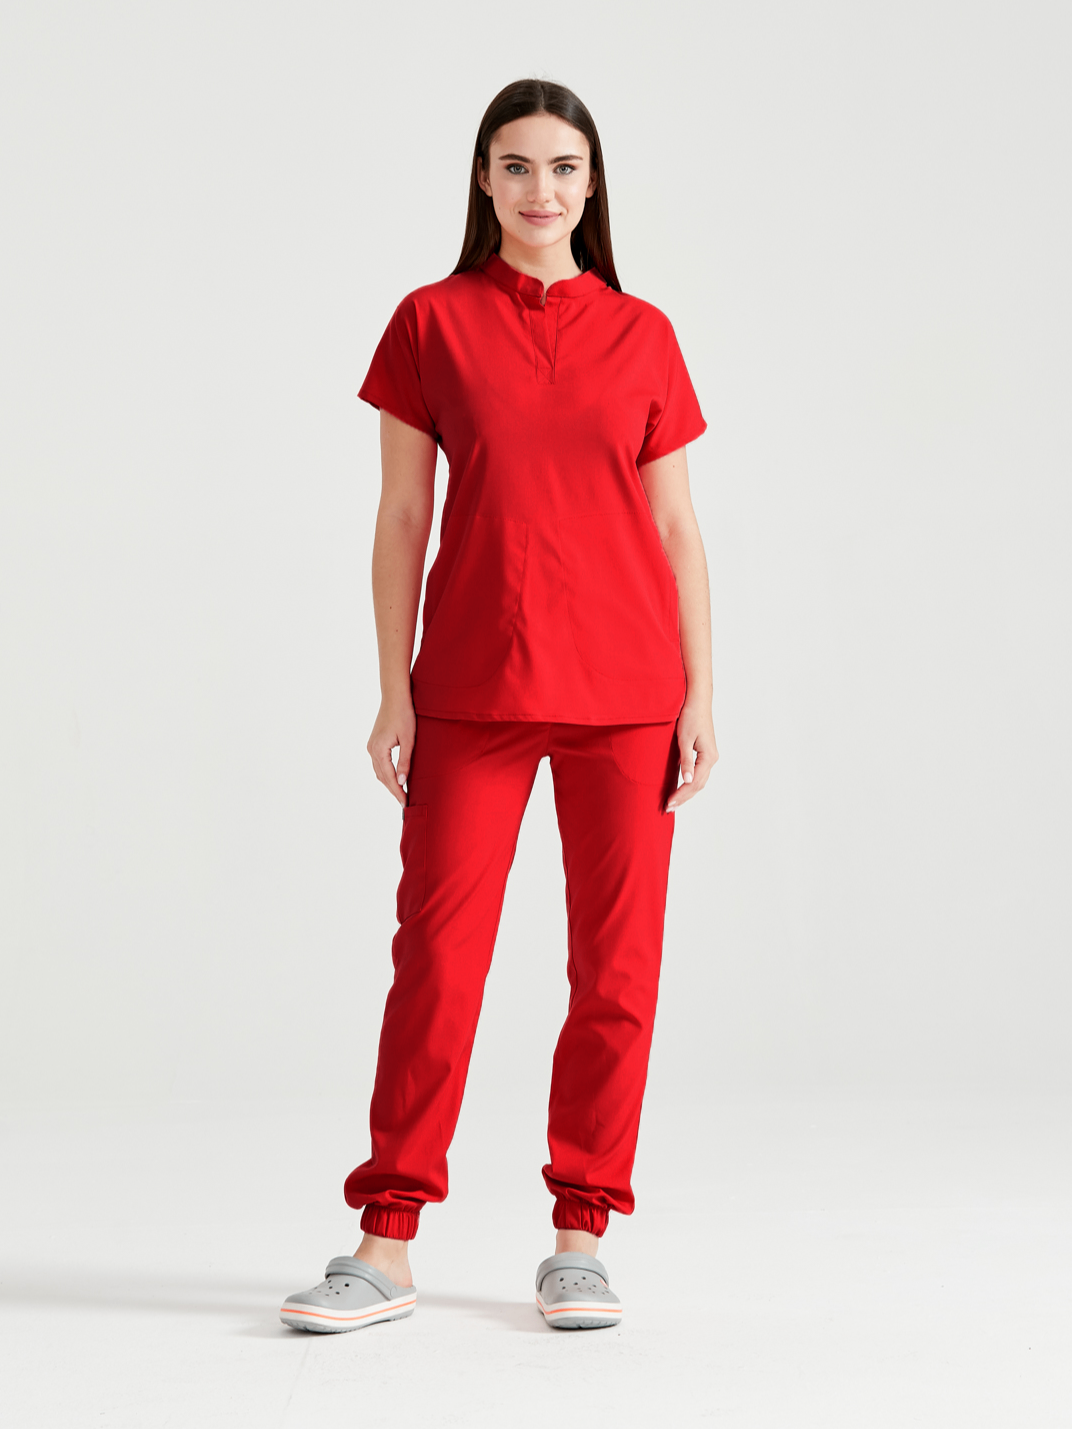 Asistenta medicala imbracata in costum medical de dama rosu - red, vedere din profil